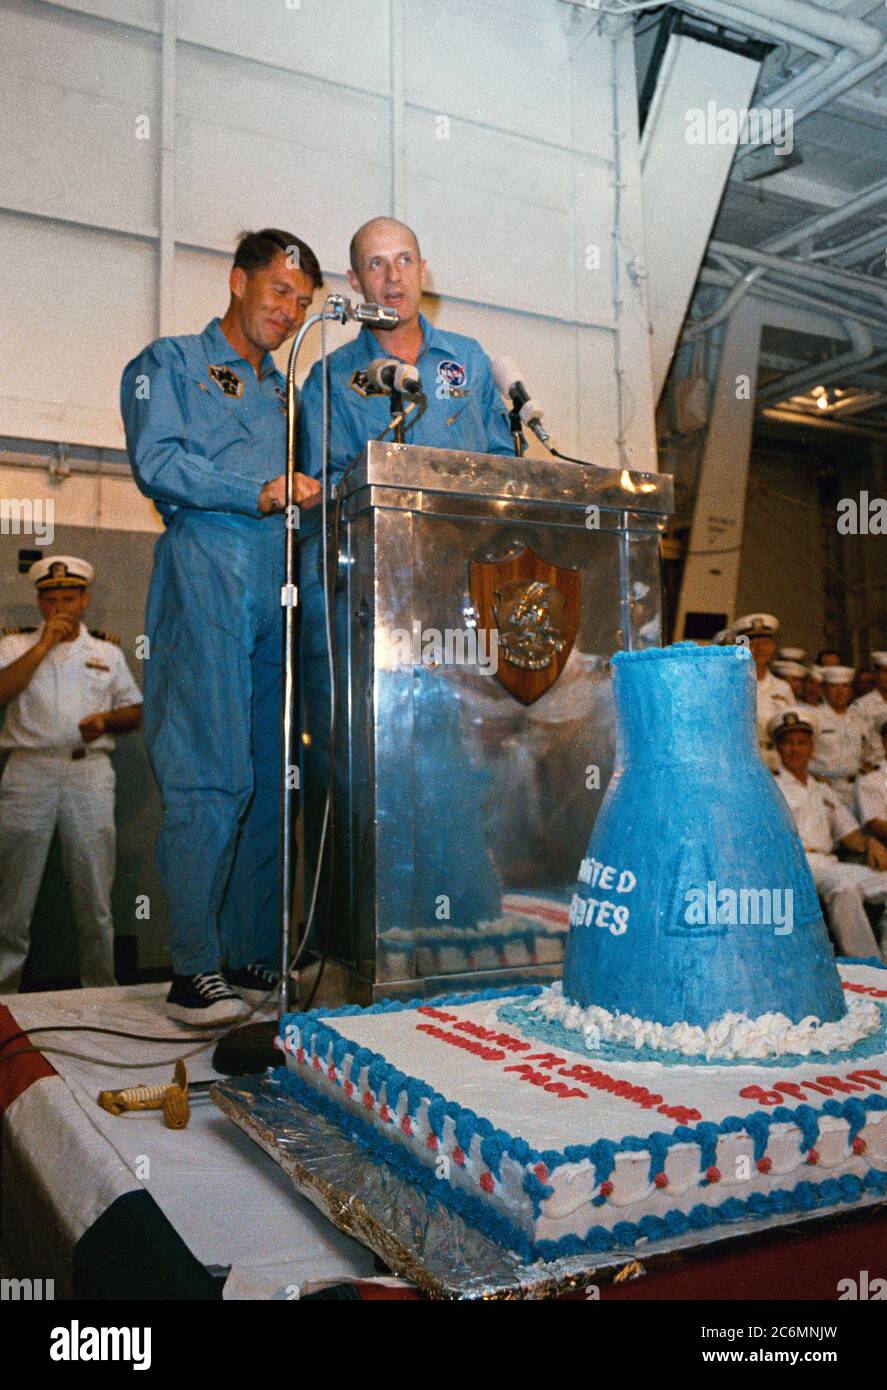 (16 Dezember 1965) - - - Astronauten Walter M. Schirra Jr. (links), Befehl Pilot, und Thomas P. Stafford, Pilot, sprechen an Bord der Flugzeugträger USS Wasp nach erfolgreicher Wiederherstellung der Gemini-6 Sonde, die Besatzungsmitglieder. Stockfoto